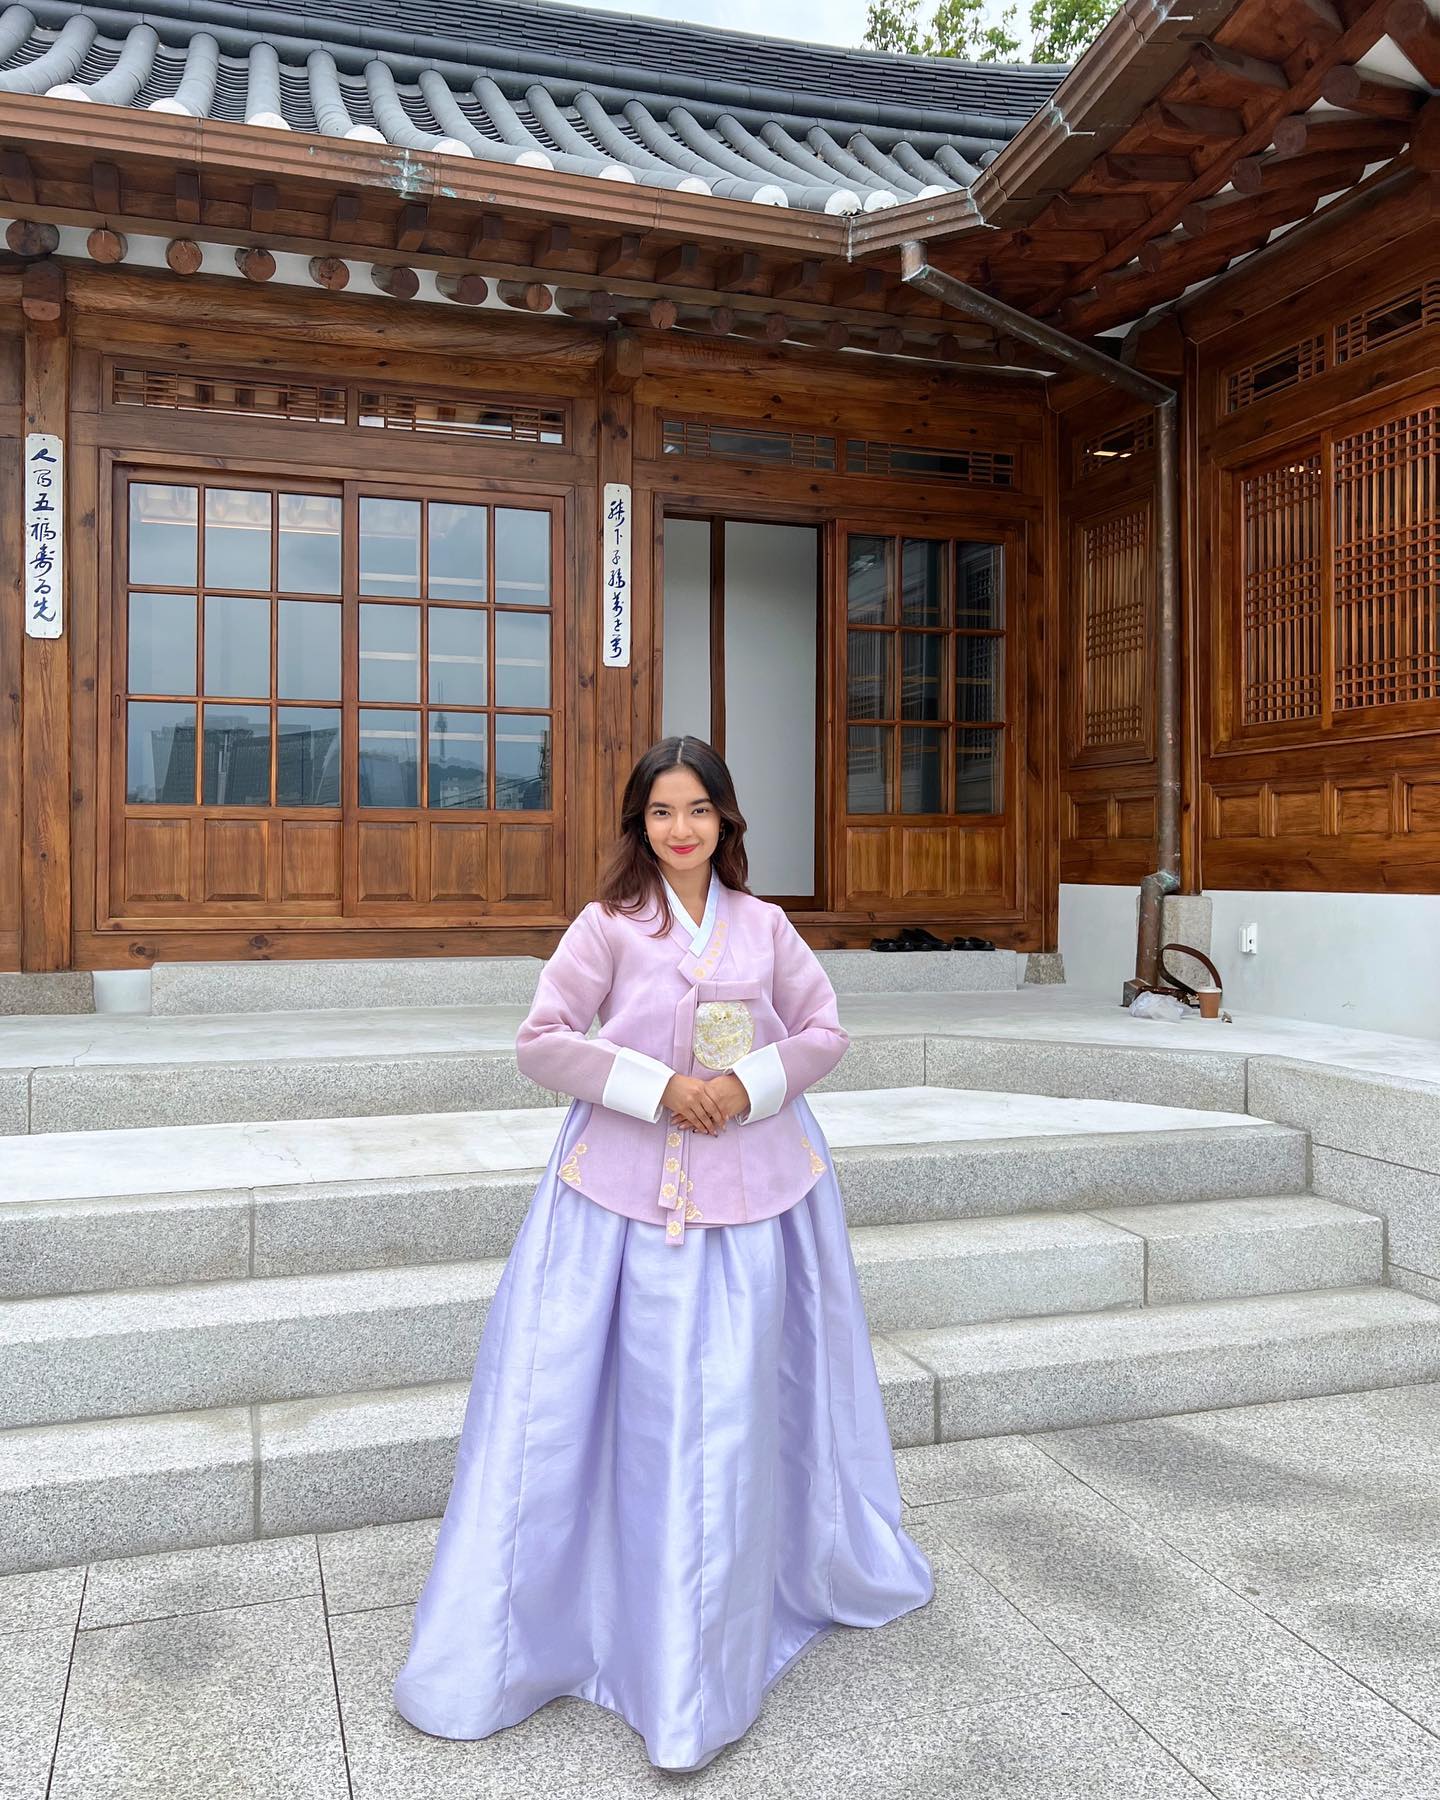 Anushka Sen in Korean Outfit - Hanbok